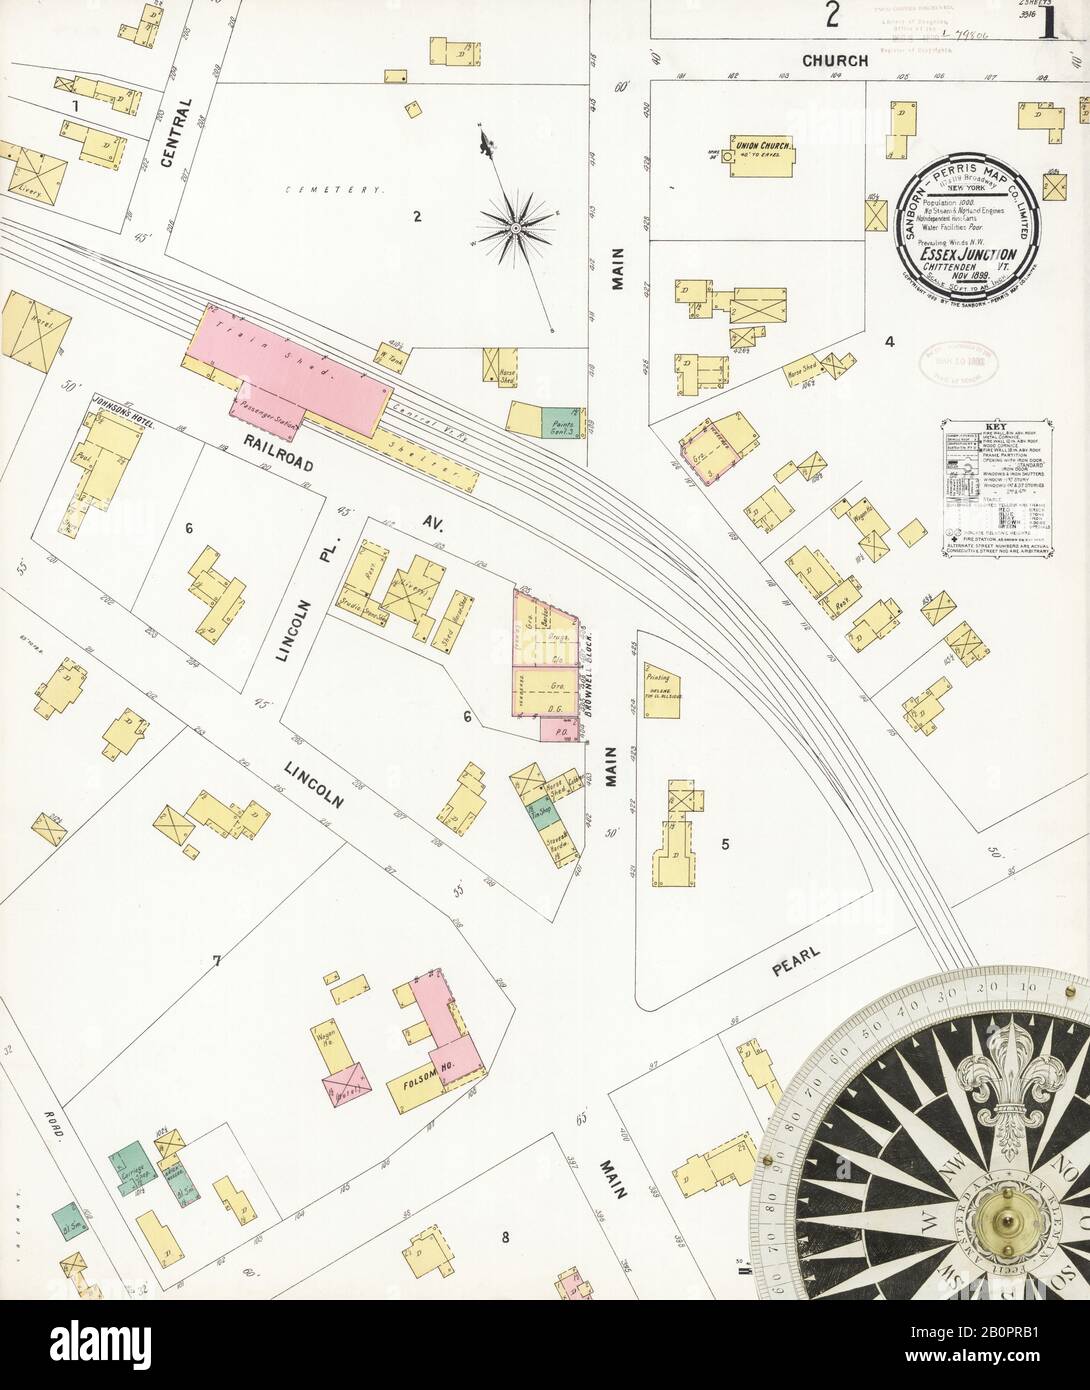 Bild 1 von Sanborn Fire Insurance Map aus Essex Junction, Chittenden County, Vermont. Nov. 1899. 2 Blatt(e), Amerika, Straßenkarte mit einem Kompass Aus Dem 19. Jahrhundert Stockfoto